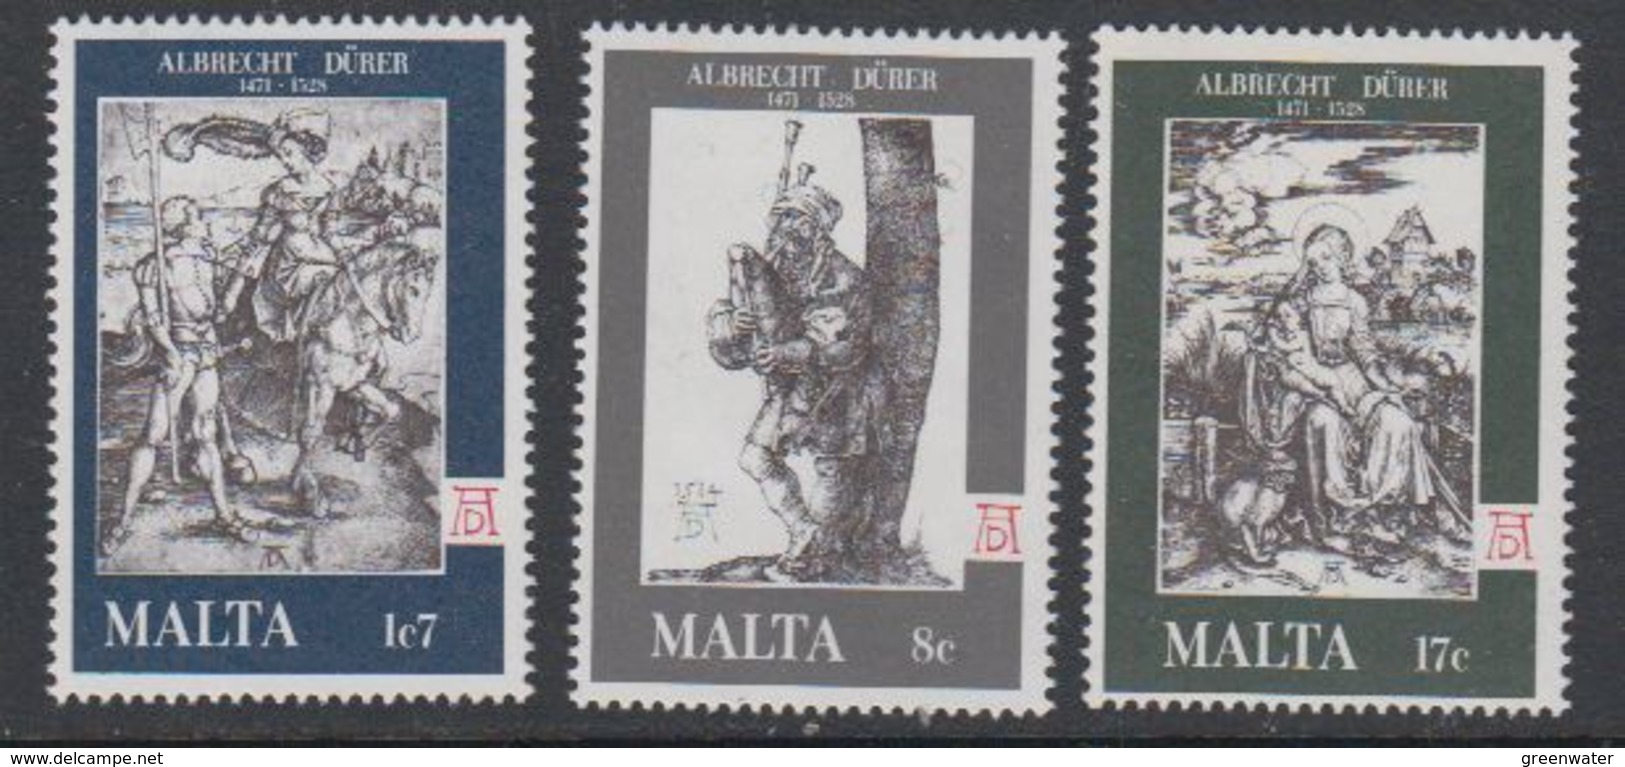 Malta 1978 Albrecht Durer 3v ** Mnh (42804) - Malta